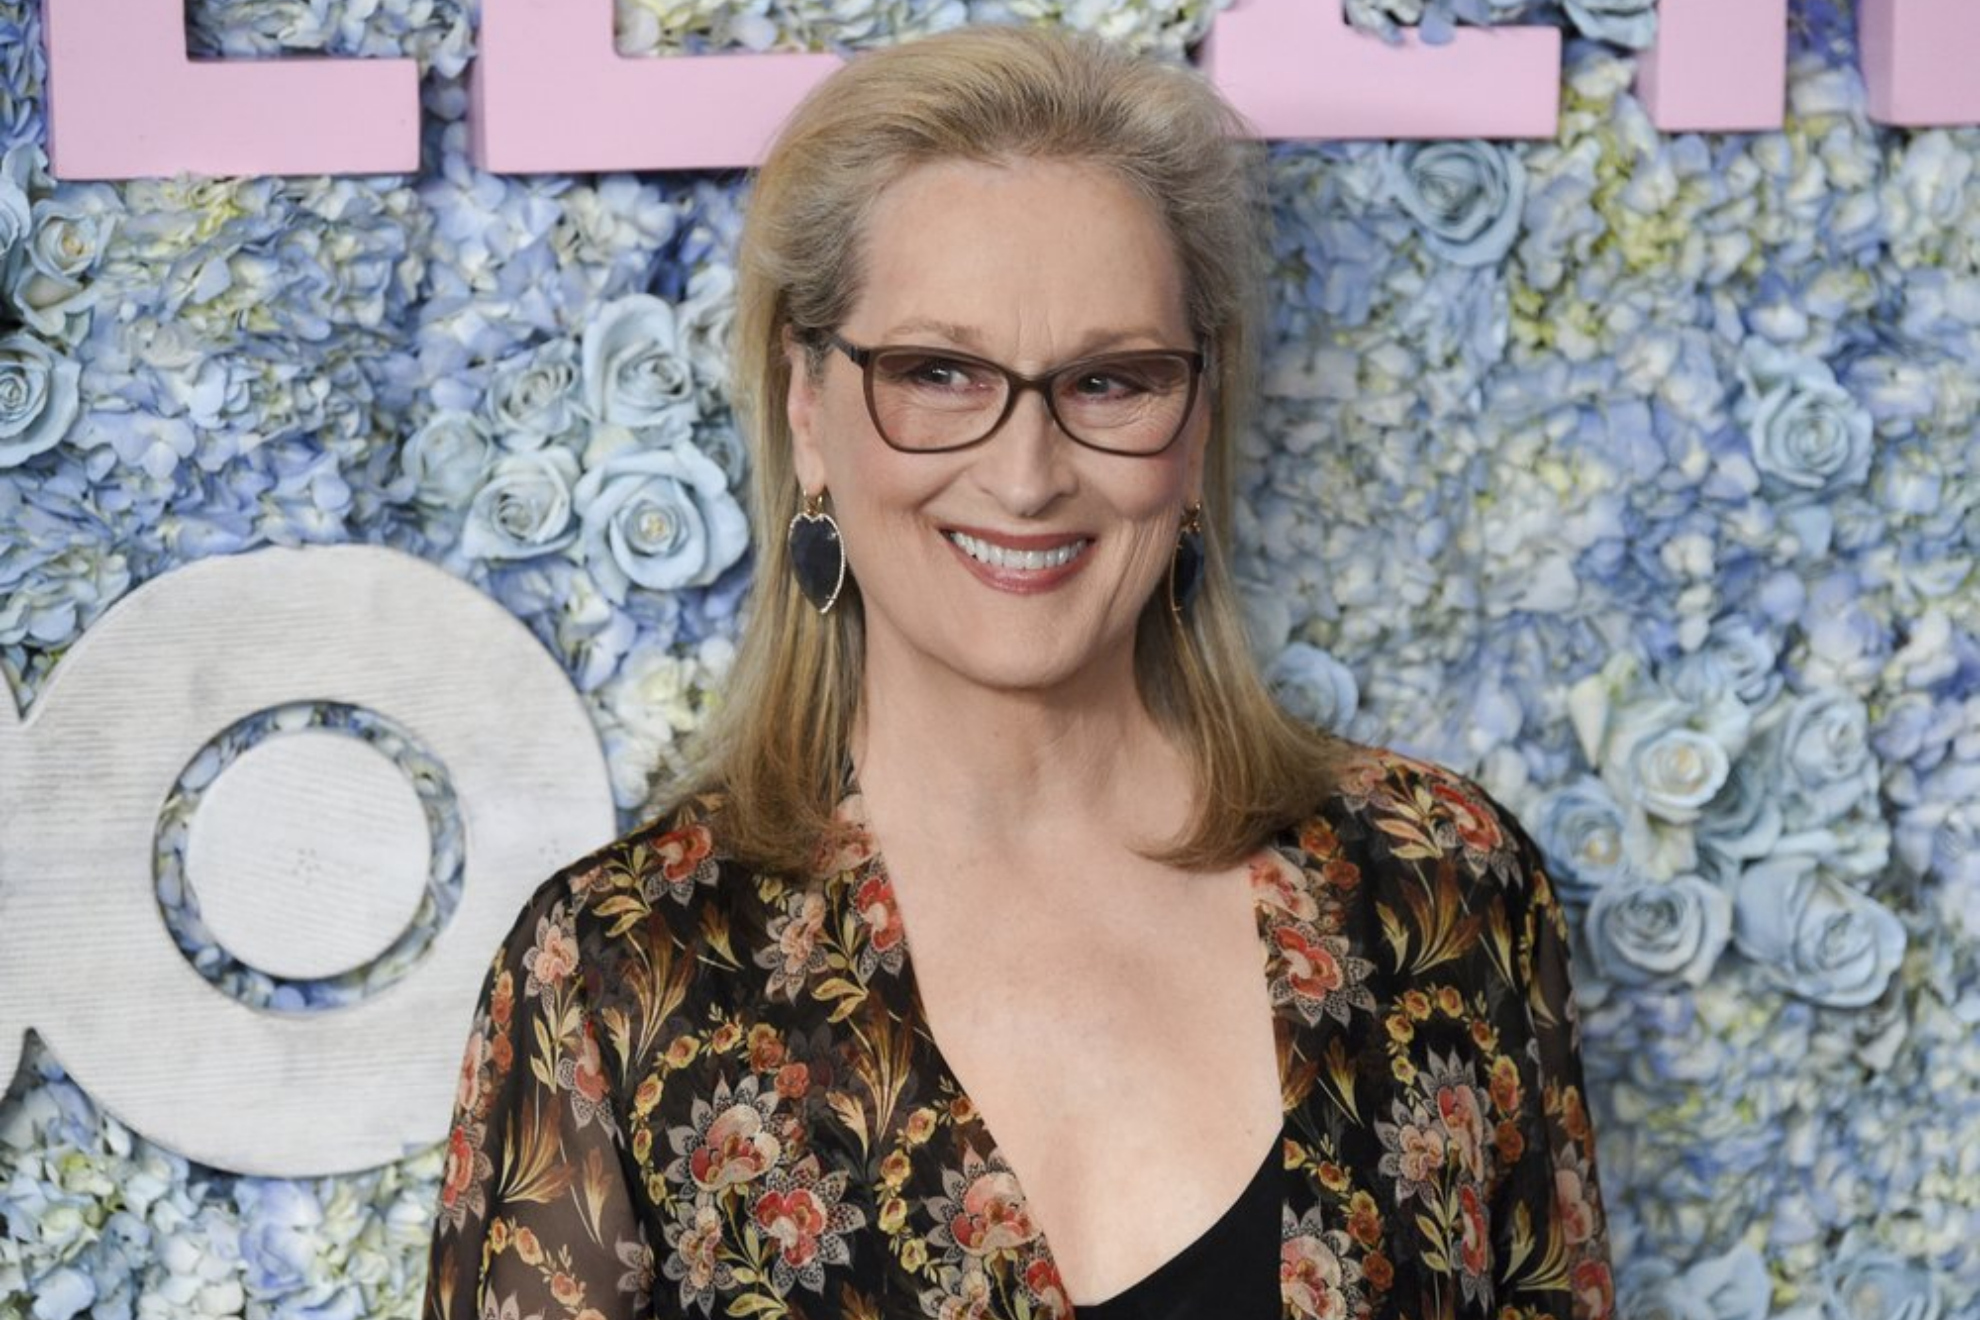 Meryl Streep is a legend in Hollywood.